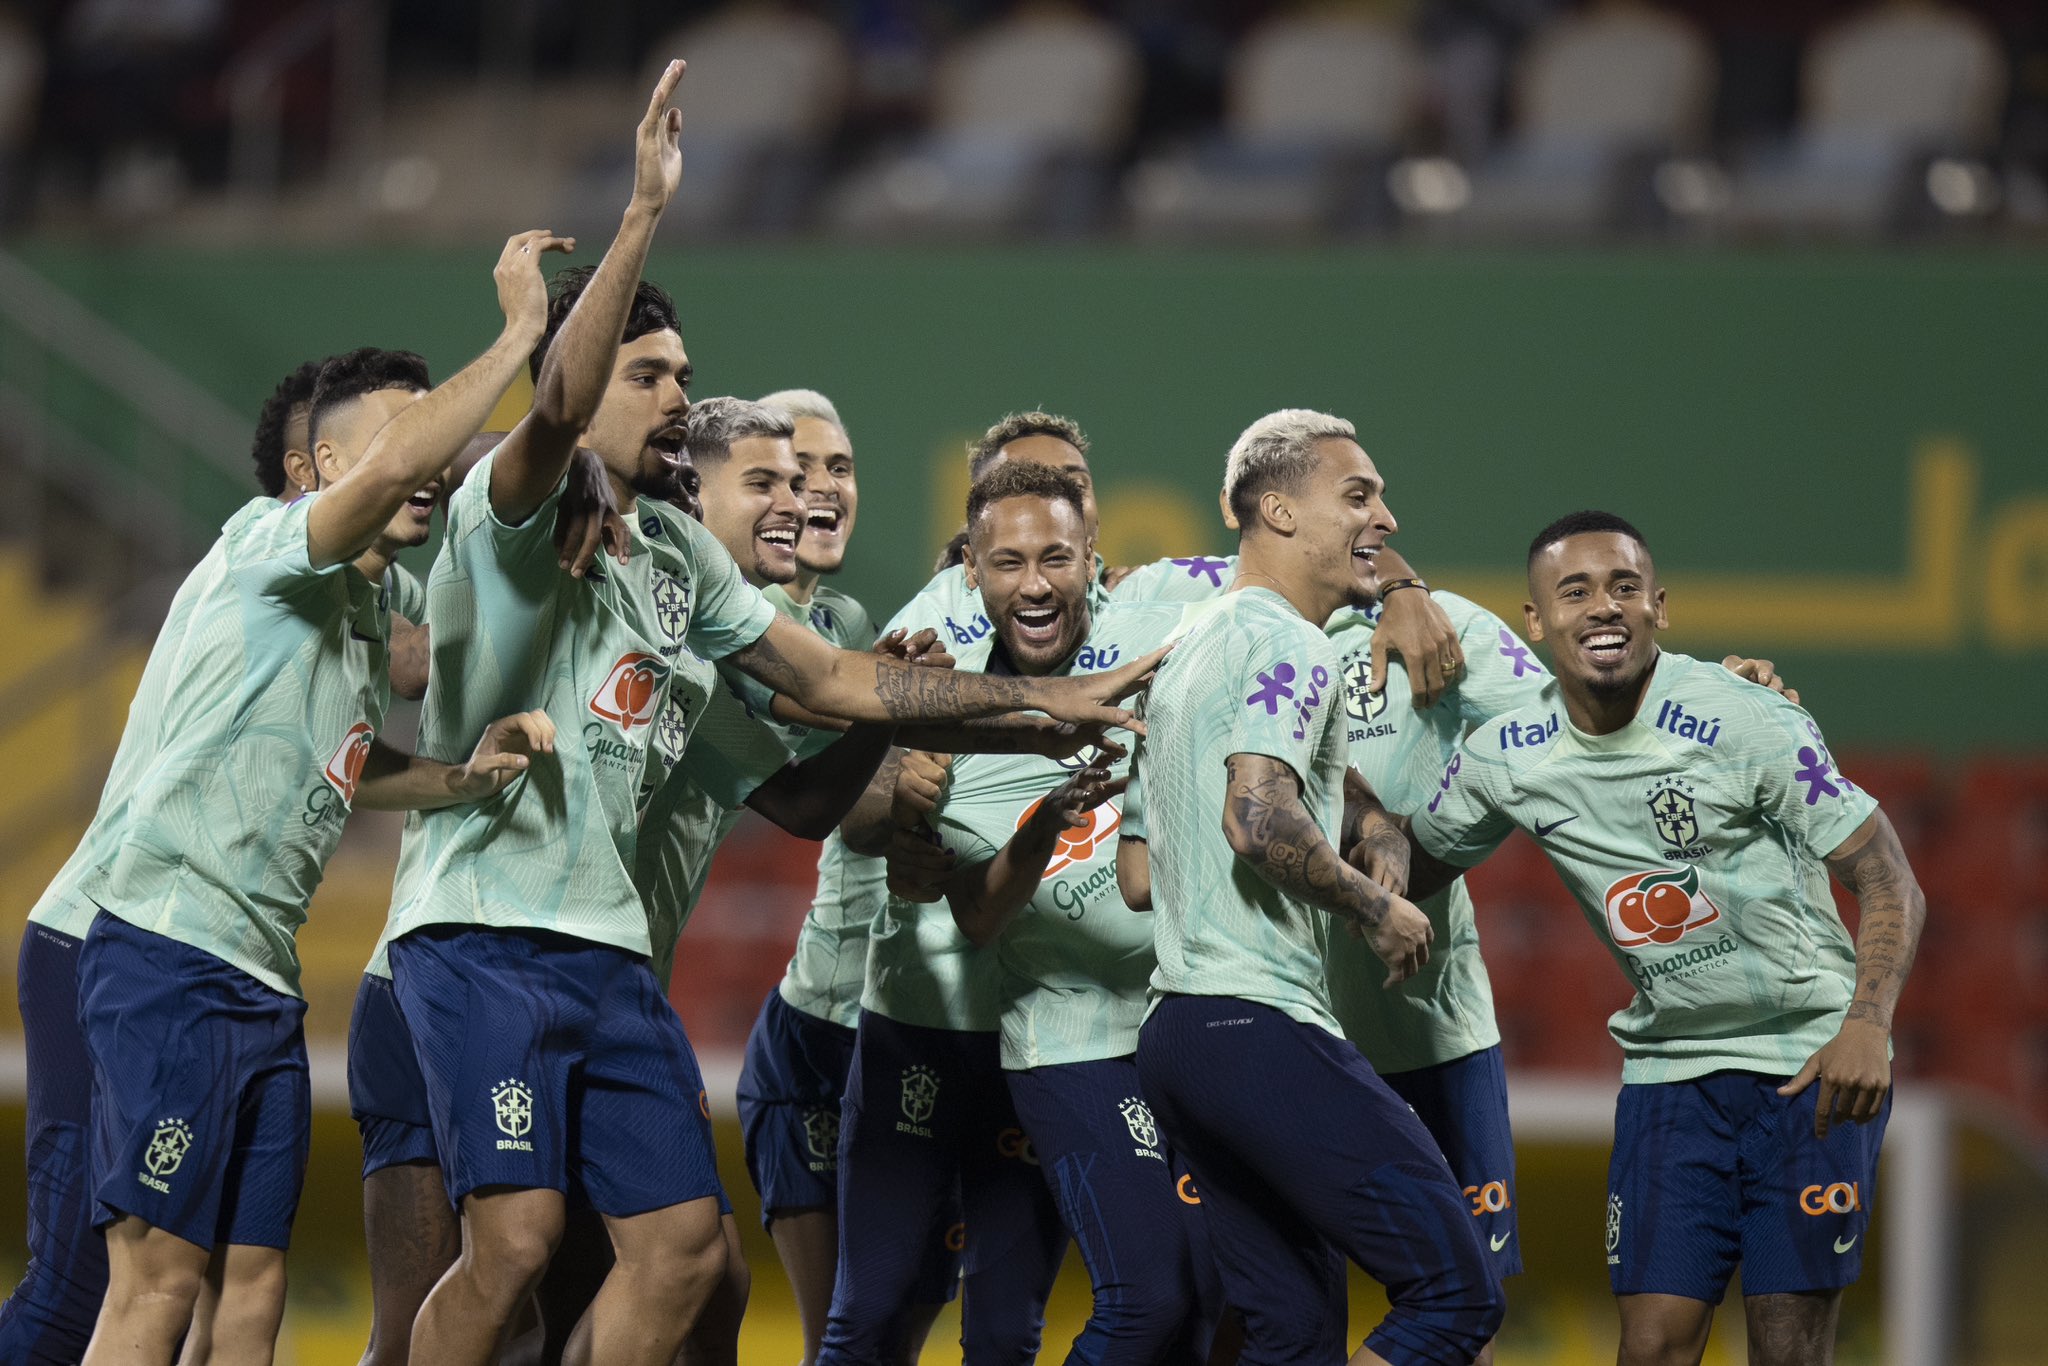 Brasil x Suíça: escalação, onde assistir e horário do jogo da Copa